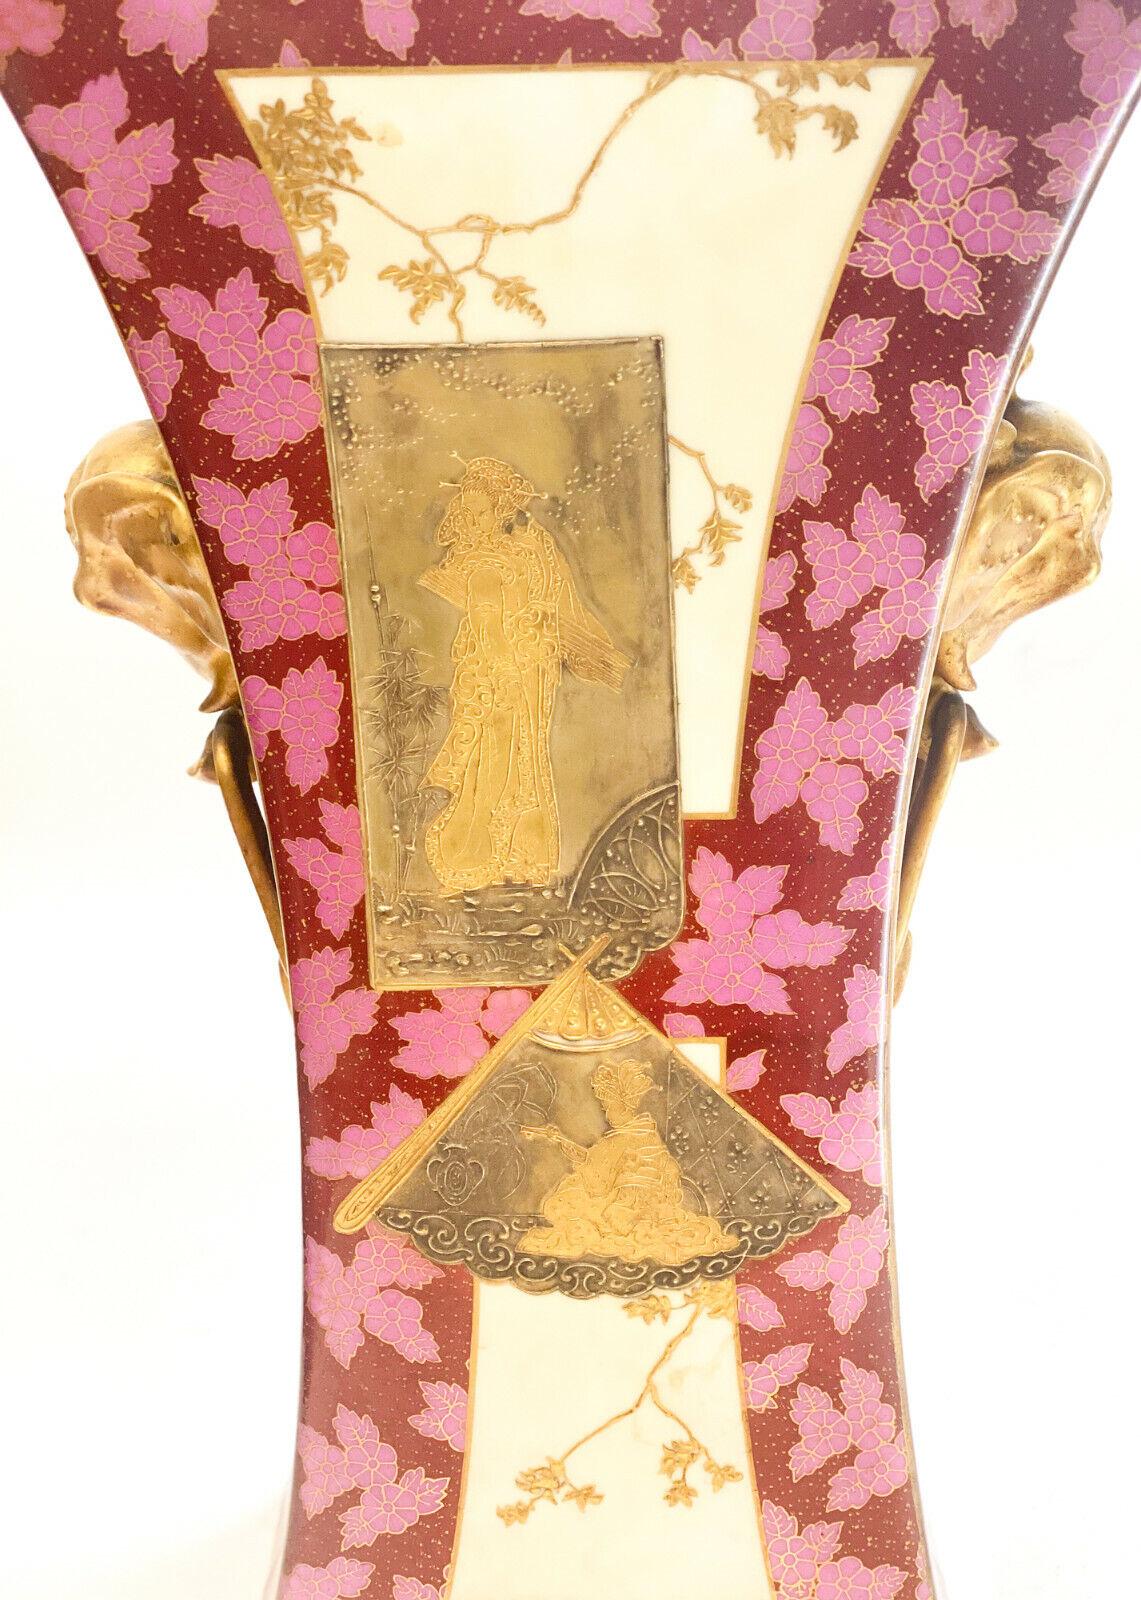 Vase à deux anses en porcelaine continentale japonaise peint à la main et incrusté de dorures

Figures japonaises multicolores en relief et décorées à l'or dans la zone centrale, avec des accents de feuilles sur le fond floral rouge et rose. Têtes